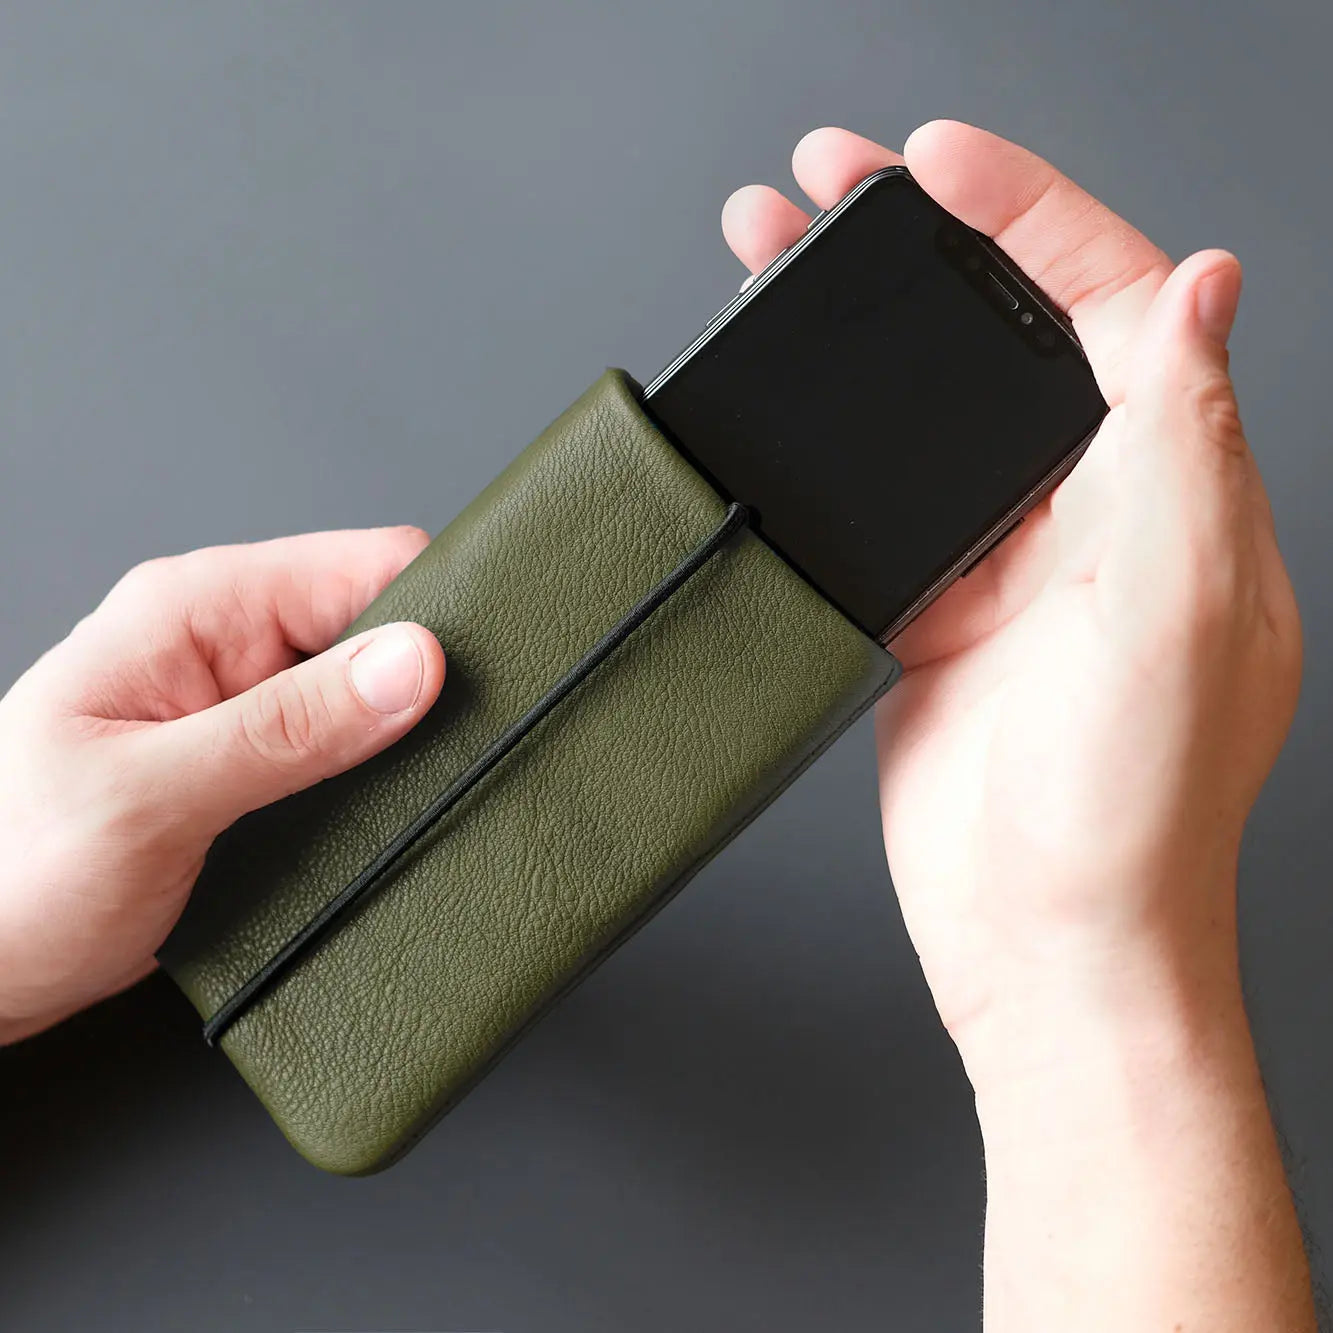 Smartphone wir in eine olivgrüne Lederhülle gesteckt